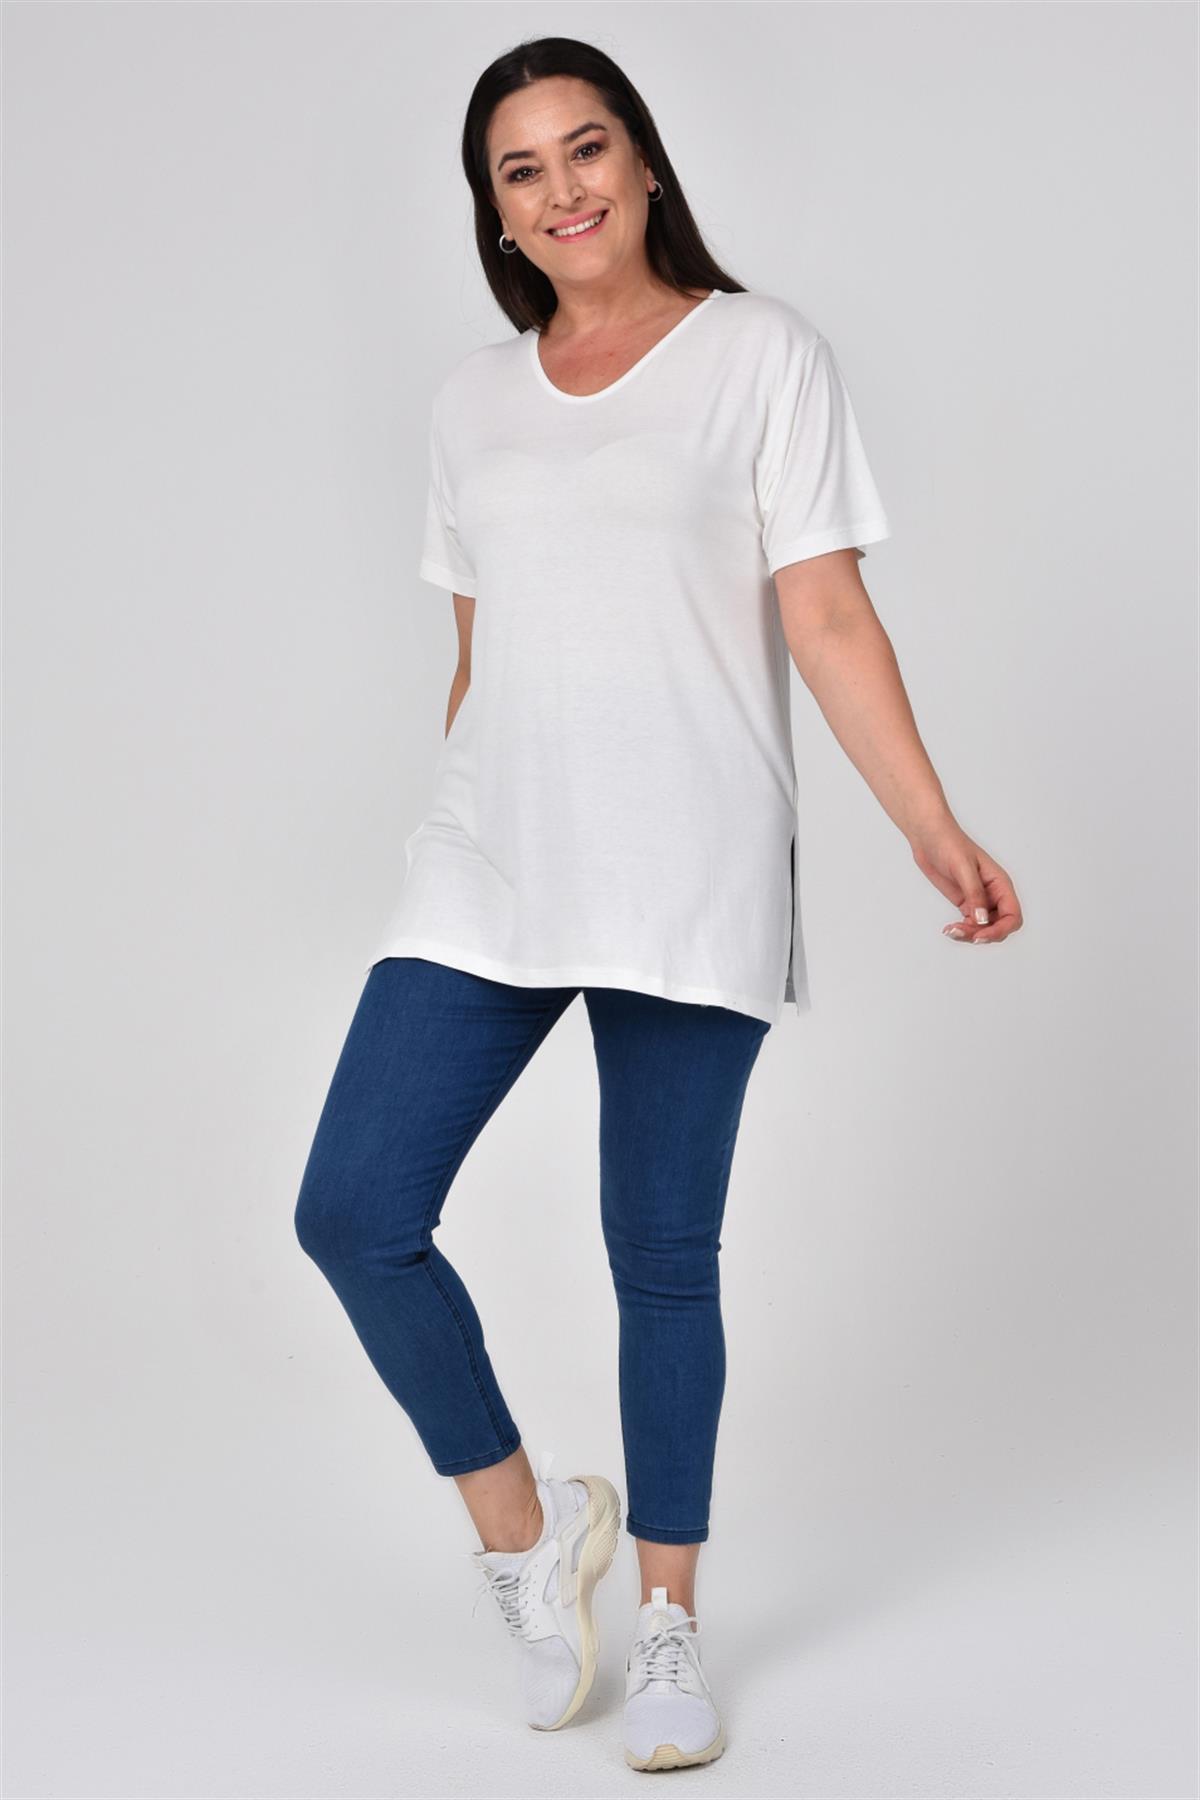 Büyük Beden V Yaka Yanları Yırtmaçlı Pamuklu Beyaz Kadın Basıc TişörtBüyük  Beden Triko | Pantolon | Tulum | Şort | Elbise - Tarzım SüperTarzım Süper  online mağazamızda en trend ve en şık